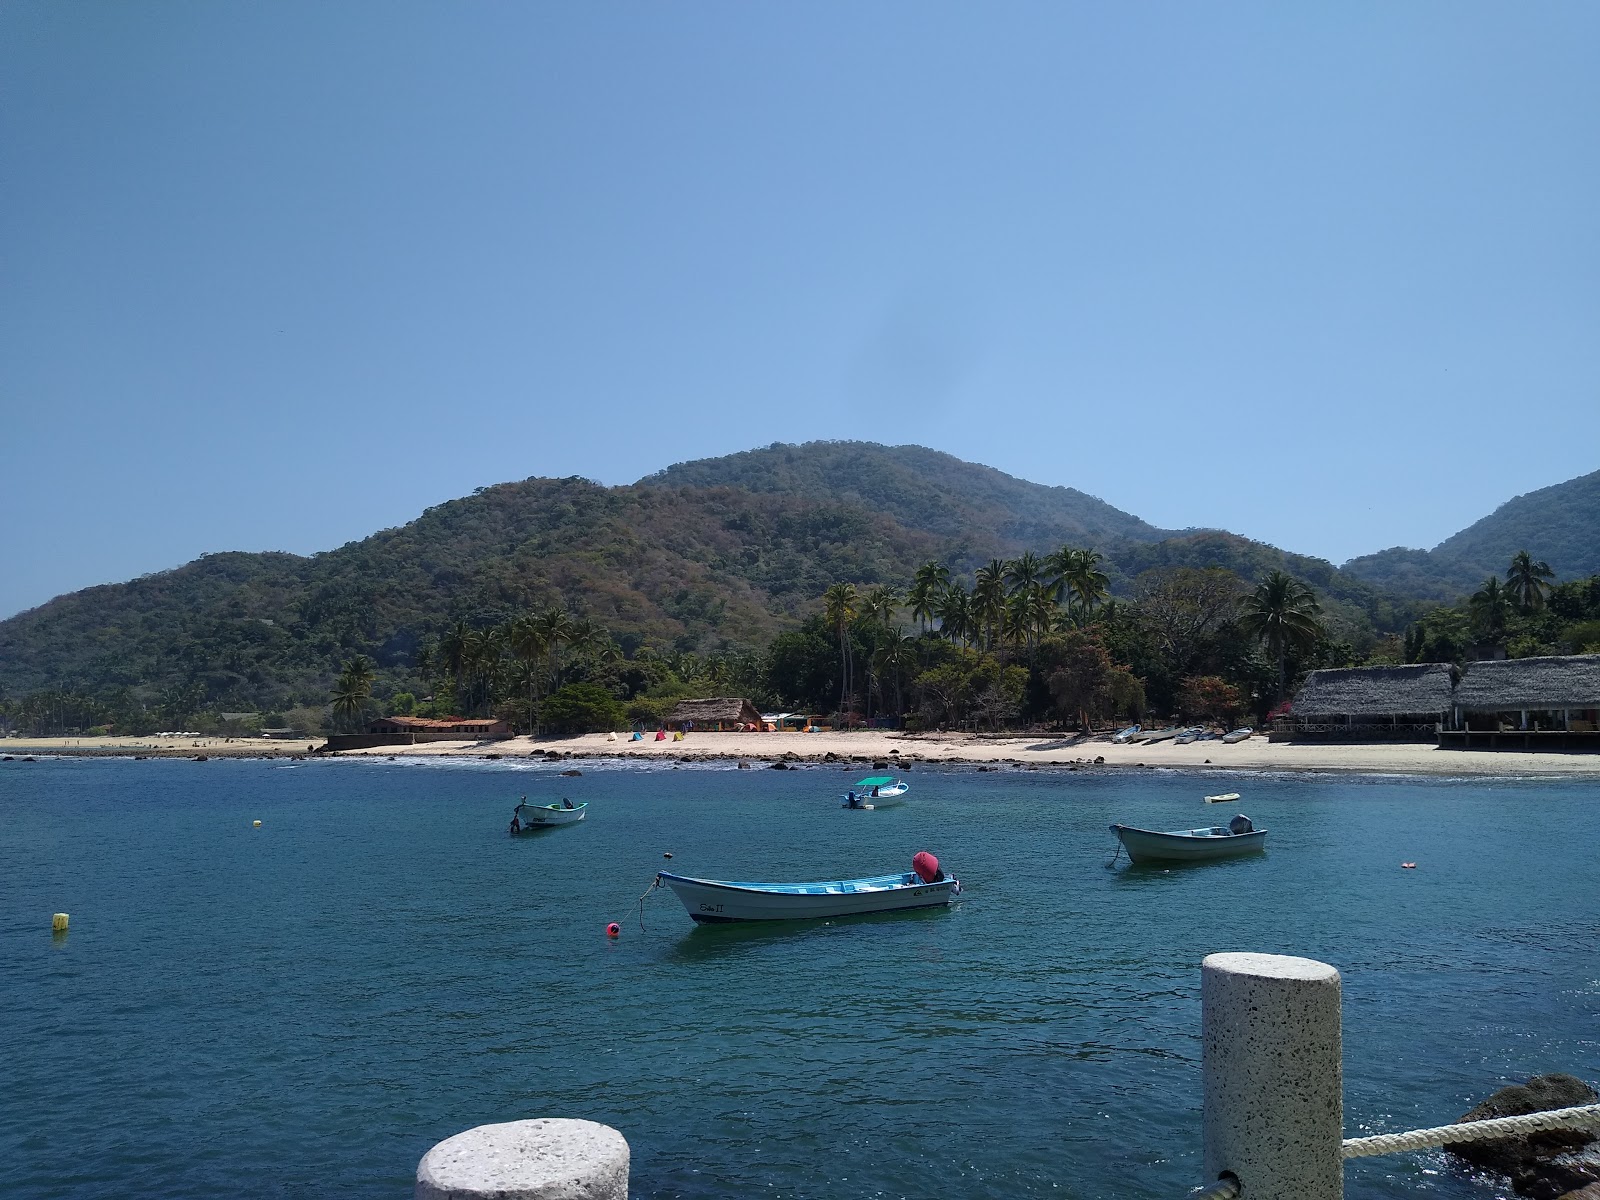 Quimixto beach I'in fotoğrafı - rahatlamayı sevenler arasında popüler bir yer